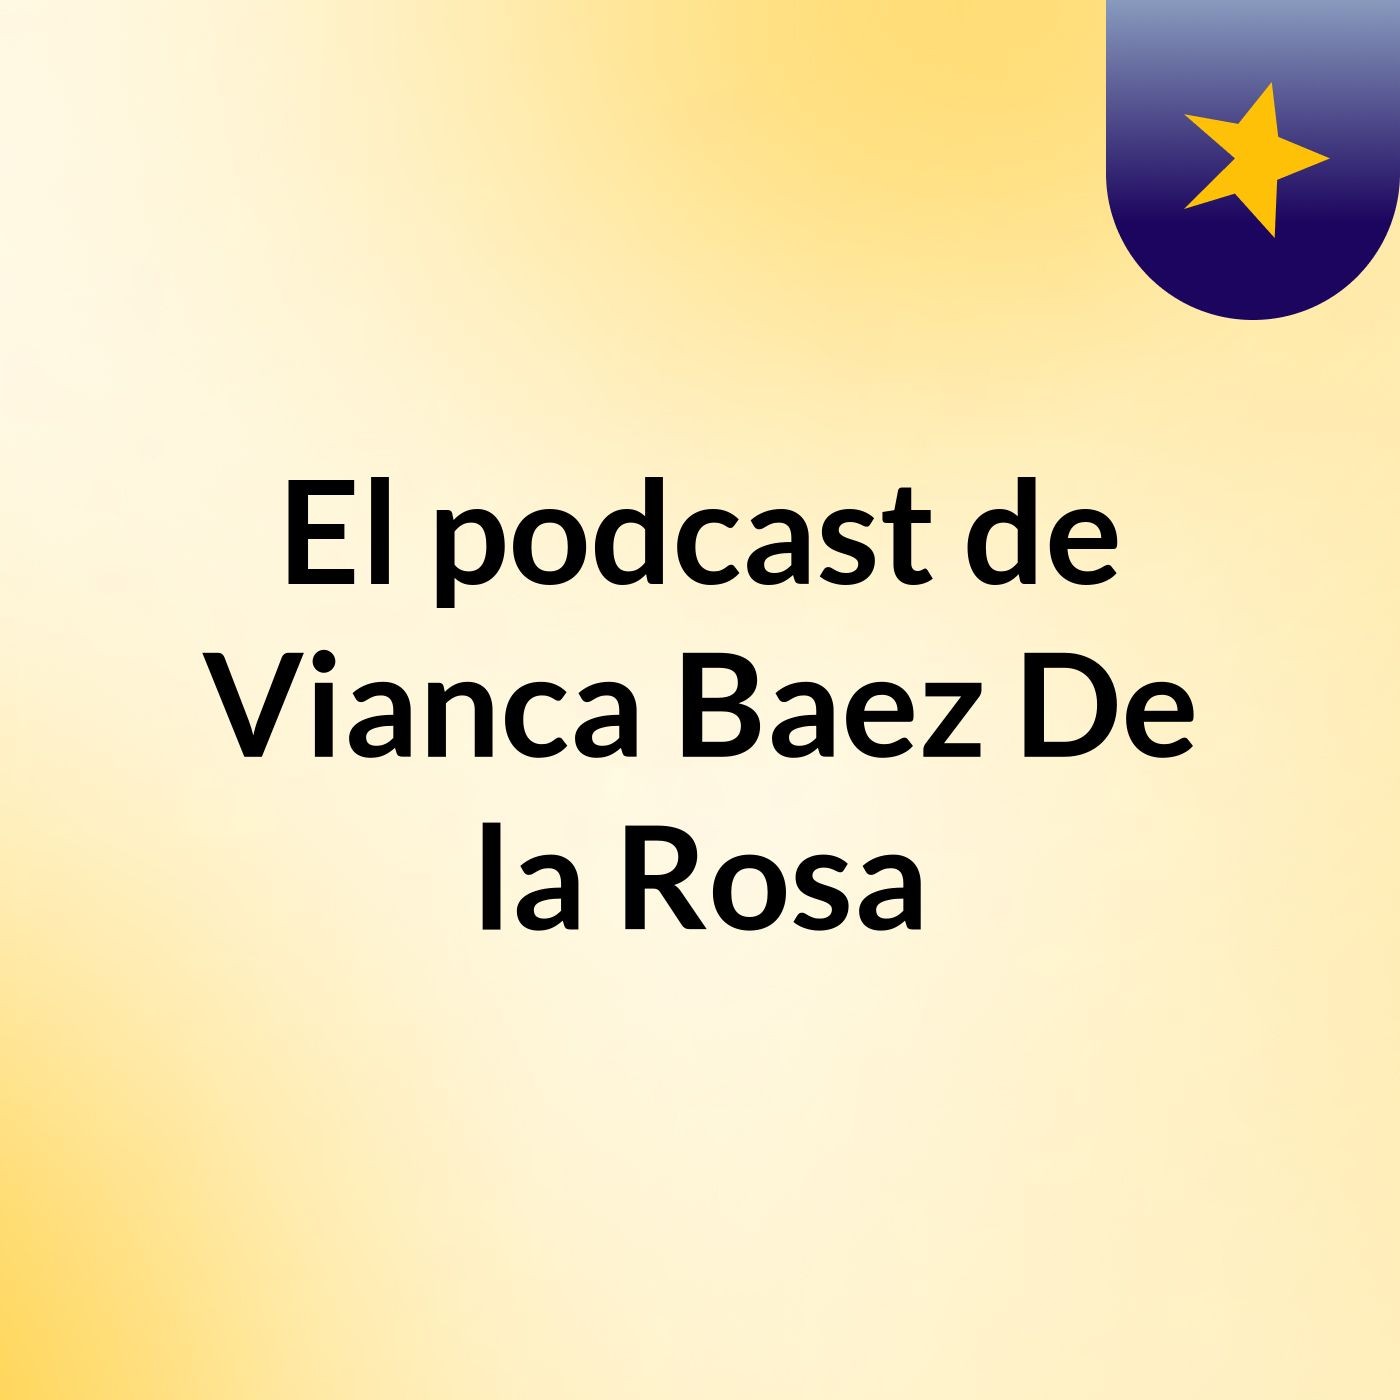 El podcast de Vianca Baez De la Rosa